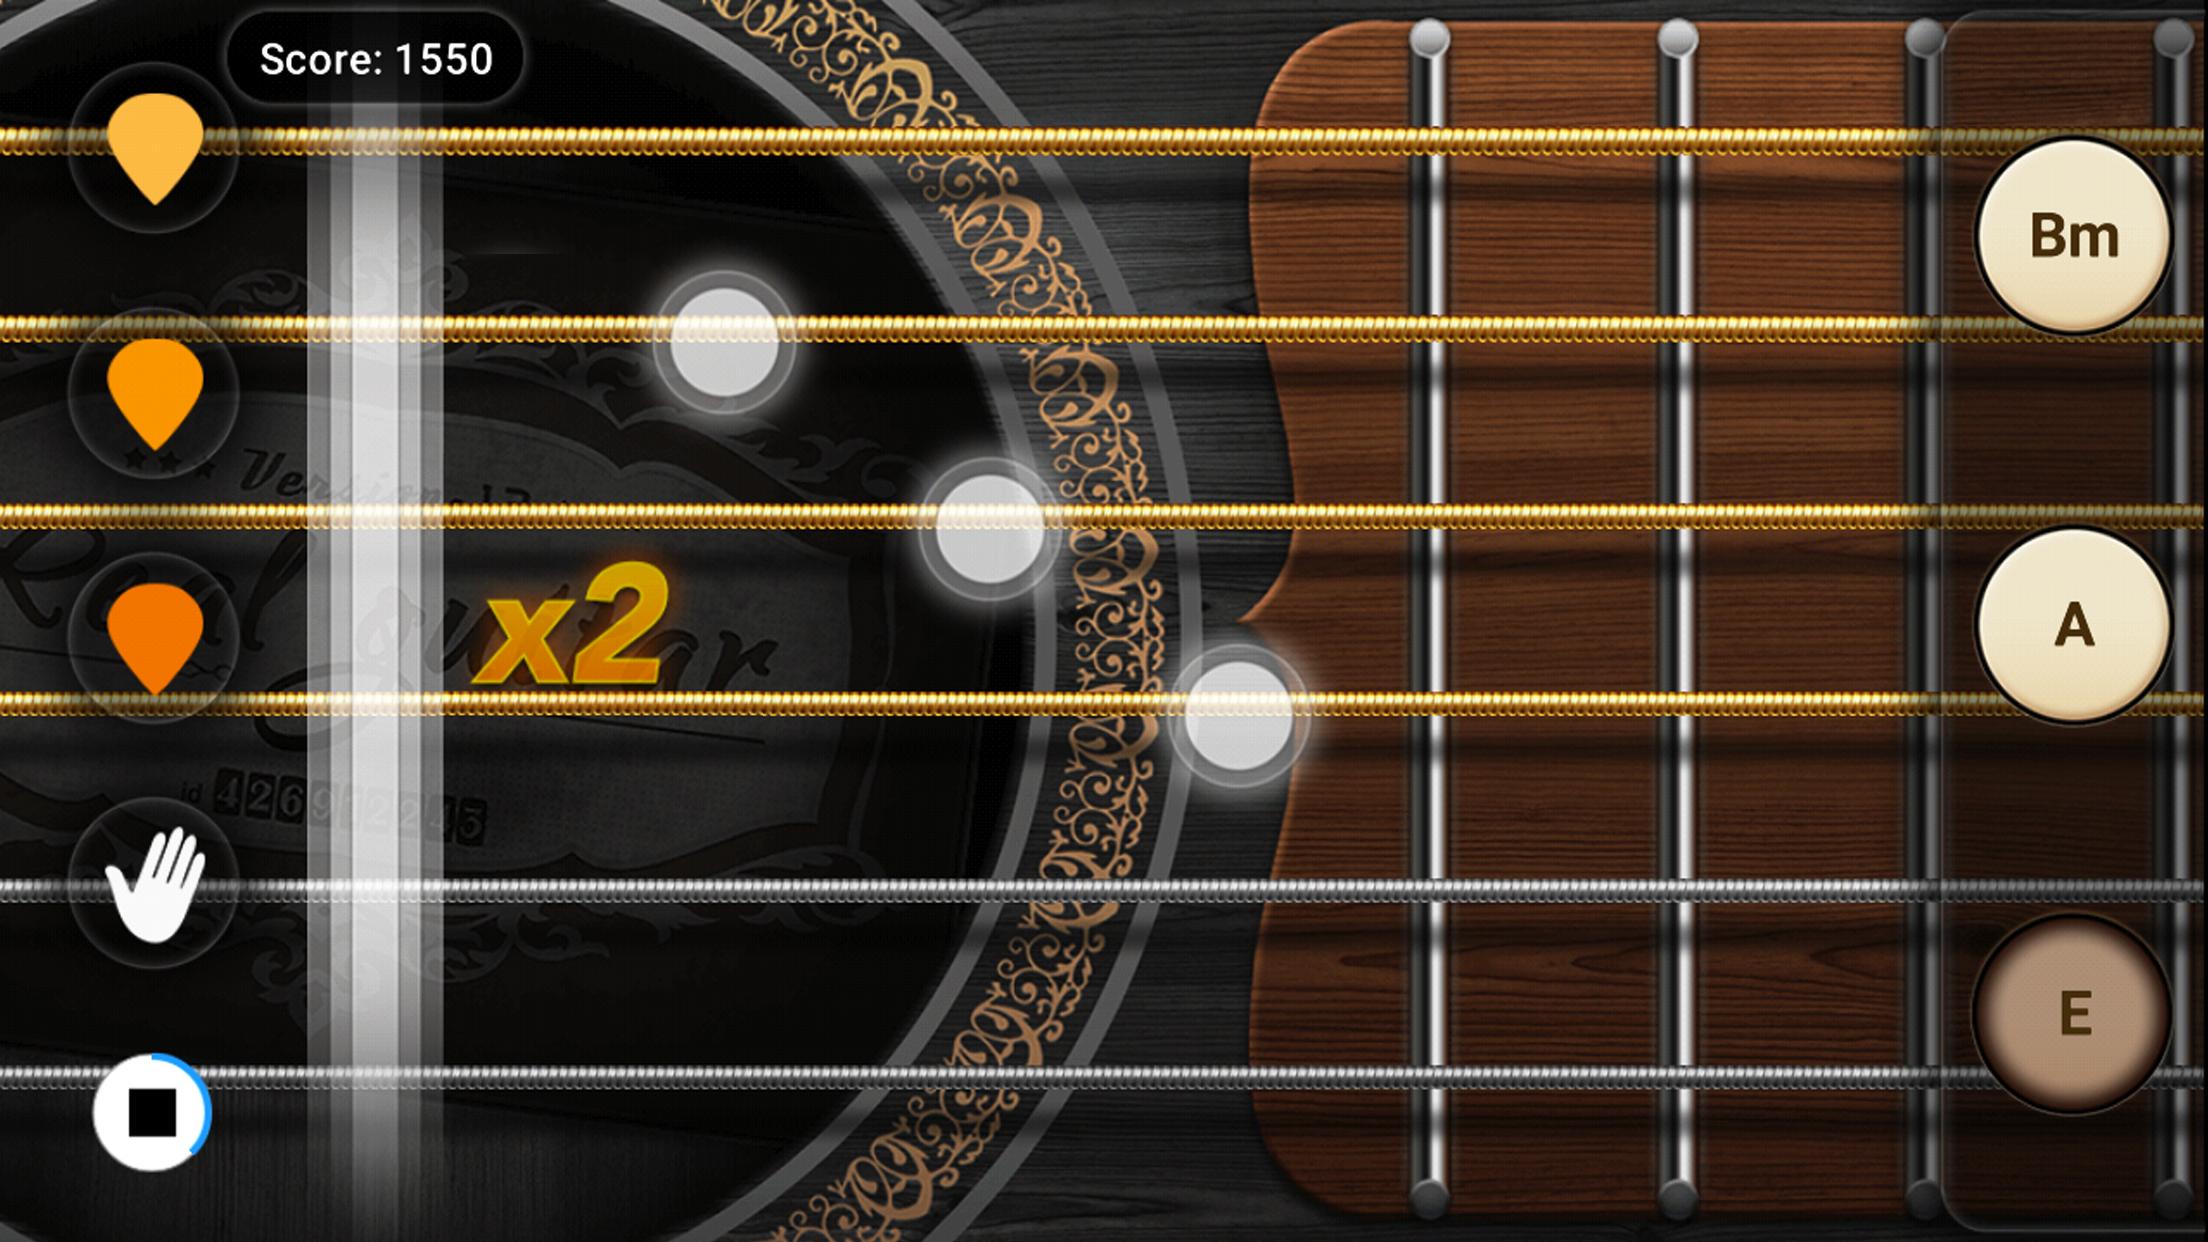 Android 用の リアル ギター 無料 ベースギターコード 練習 音楽 音ゲー リズム ゲーム と 楽器 アプリ Apk をダウンロード